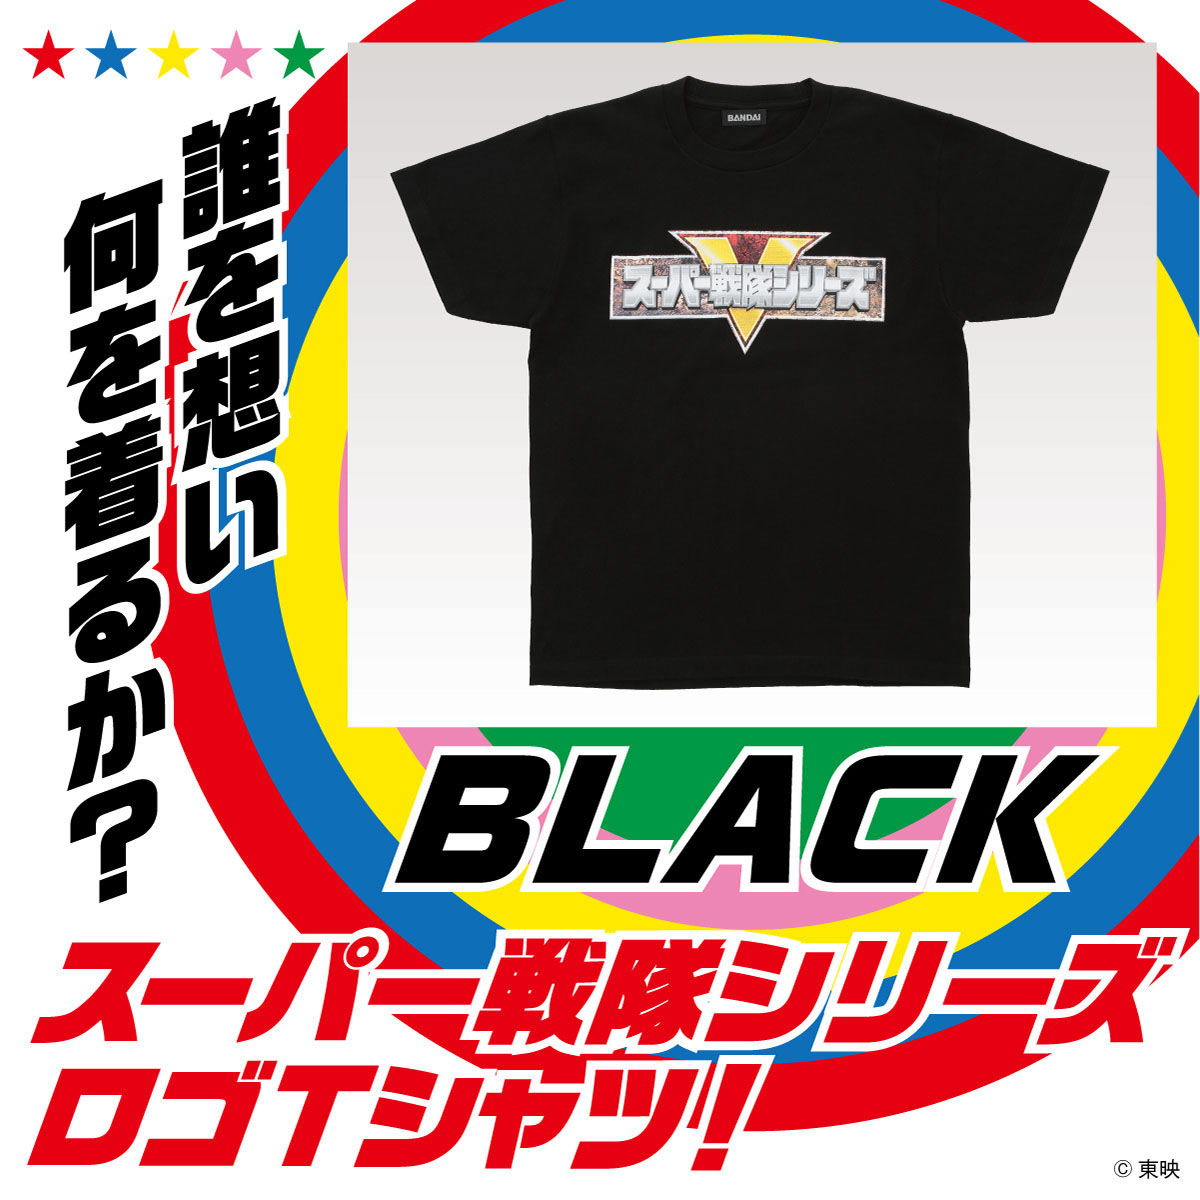 スーパー戦隊シリーズロゴ Tシャツ ブラック 宇宙戦隊キュウレンジャー 趣味 コレクション バンダイナムコグループ公式通販サイト